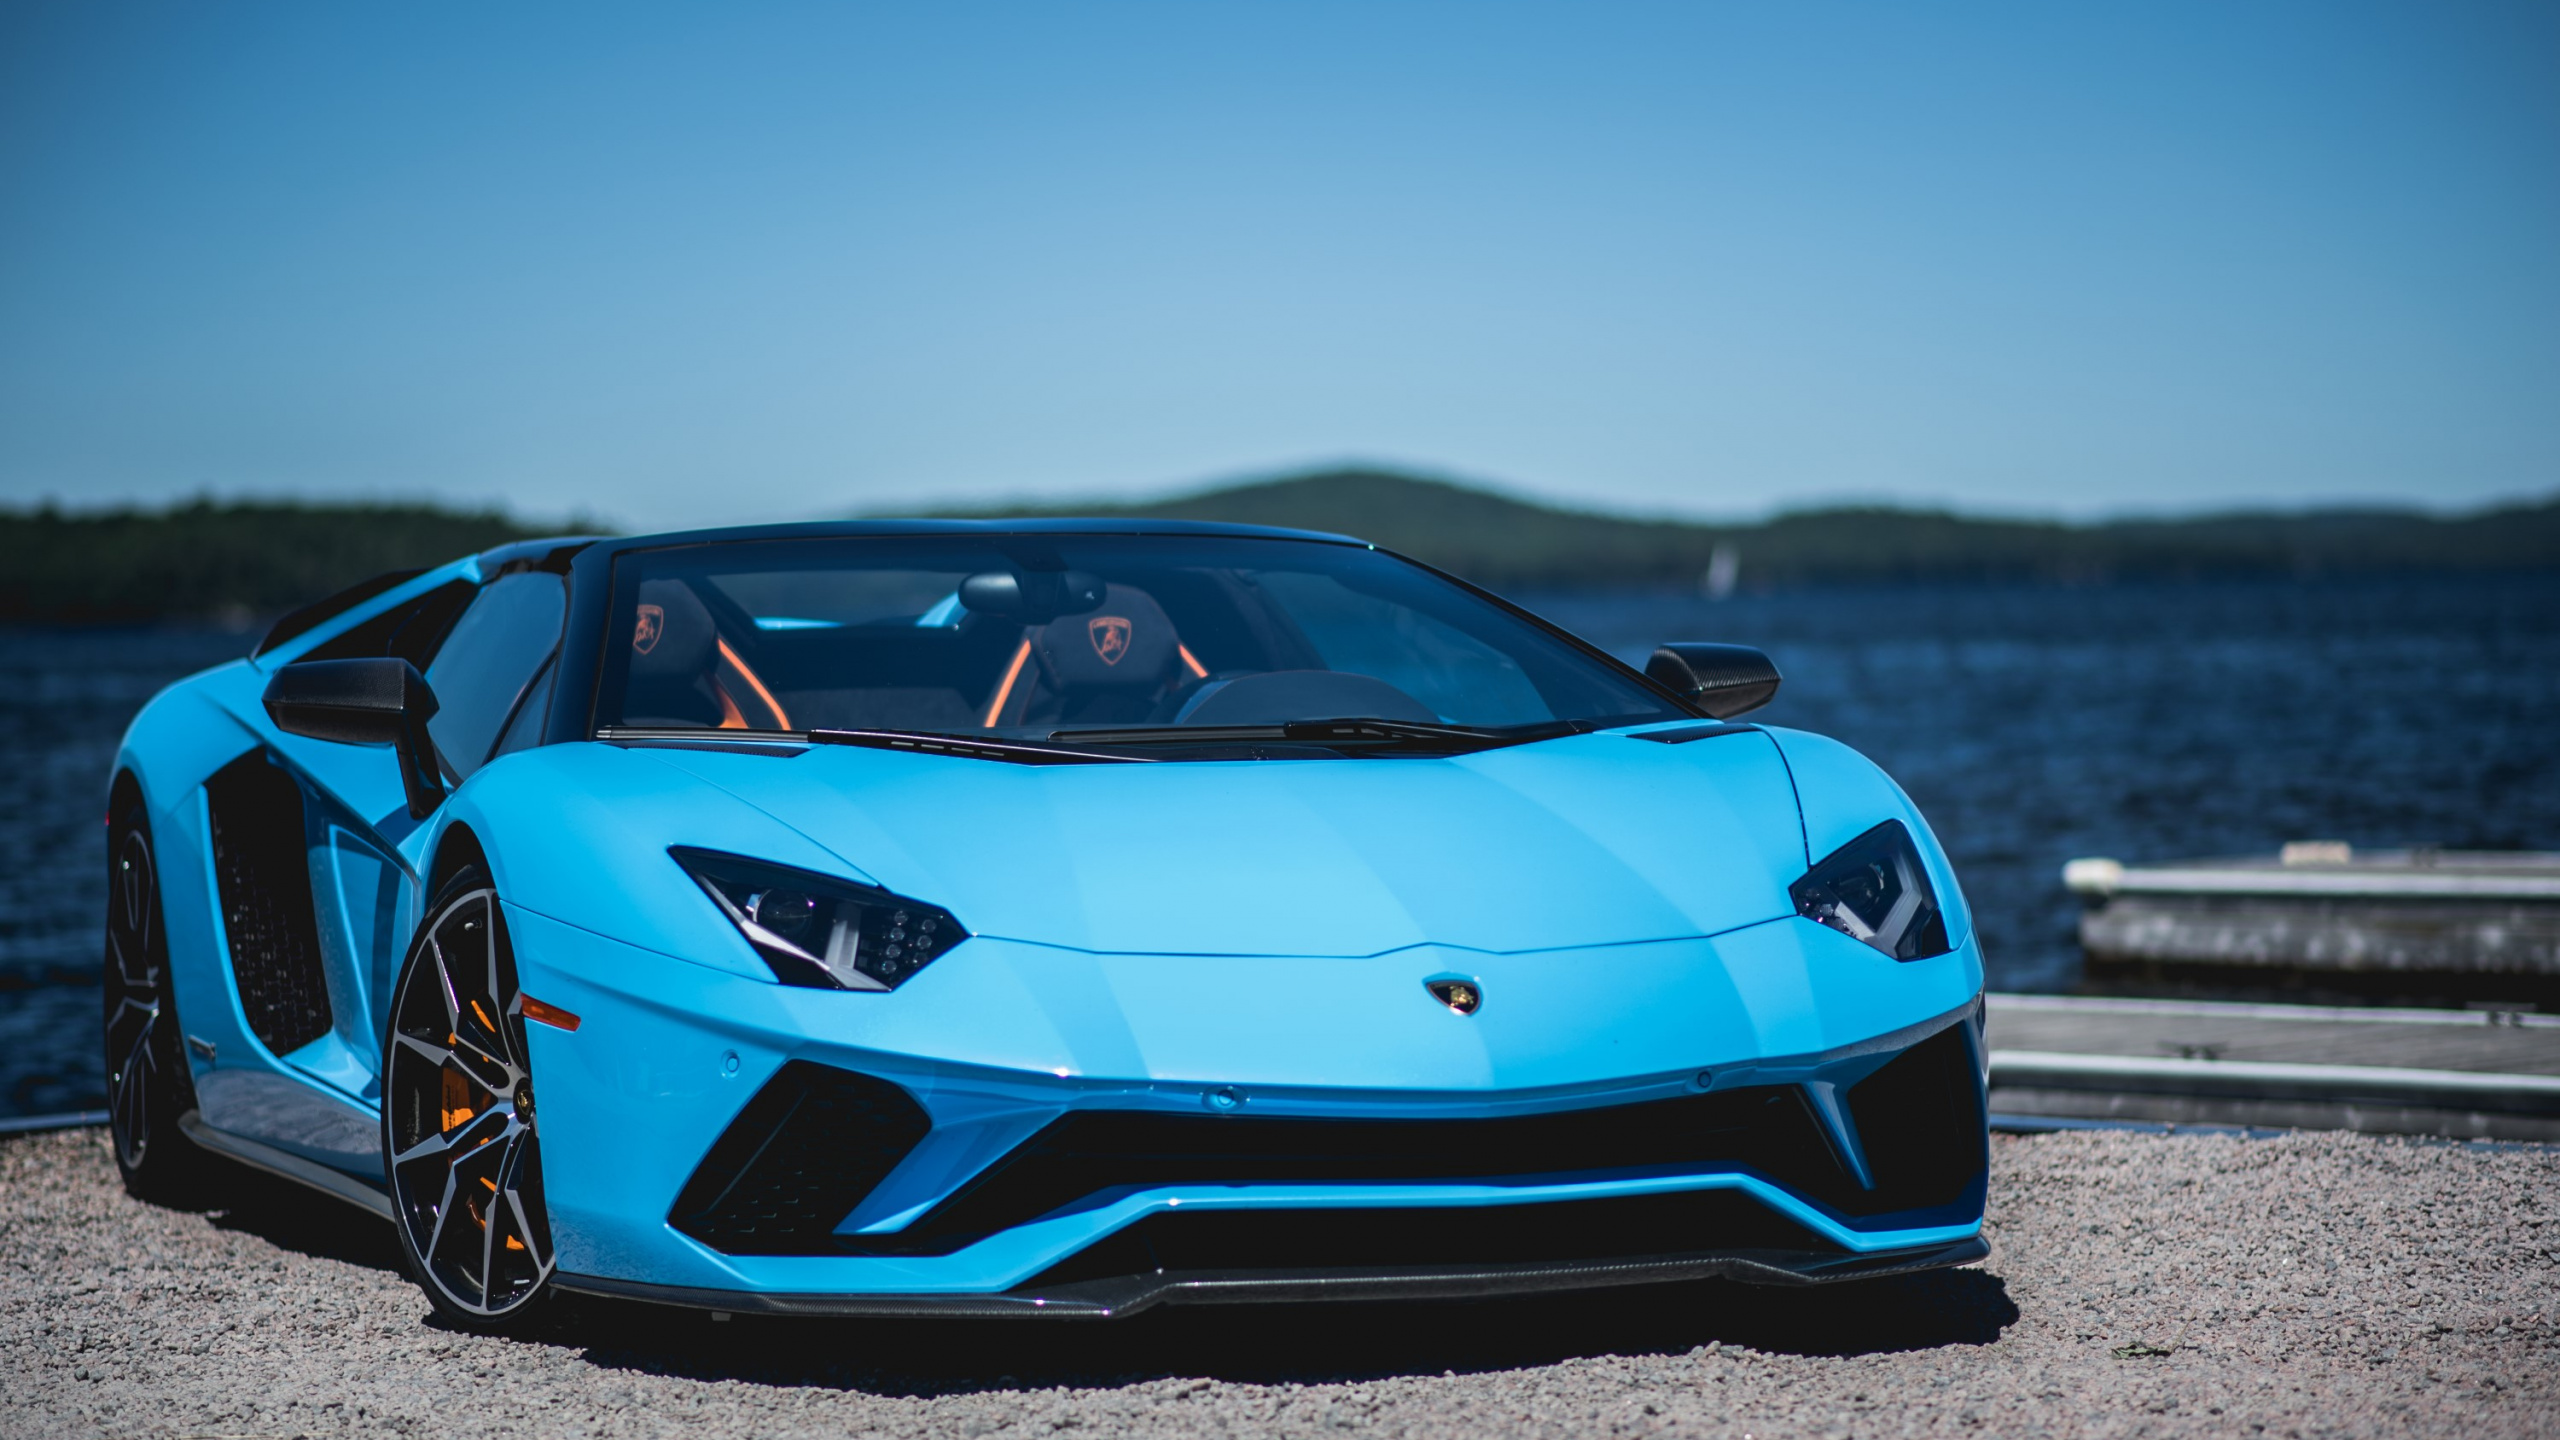 Download Blue, sports car, Lamborghini Aventador S wallpaper, 2560x Dual Wide, Widescreen 16: Widescreen